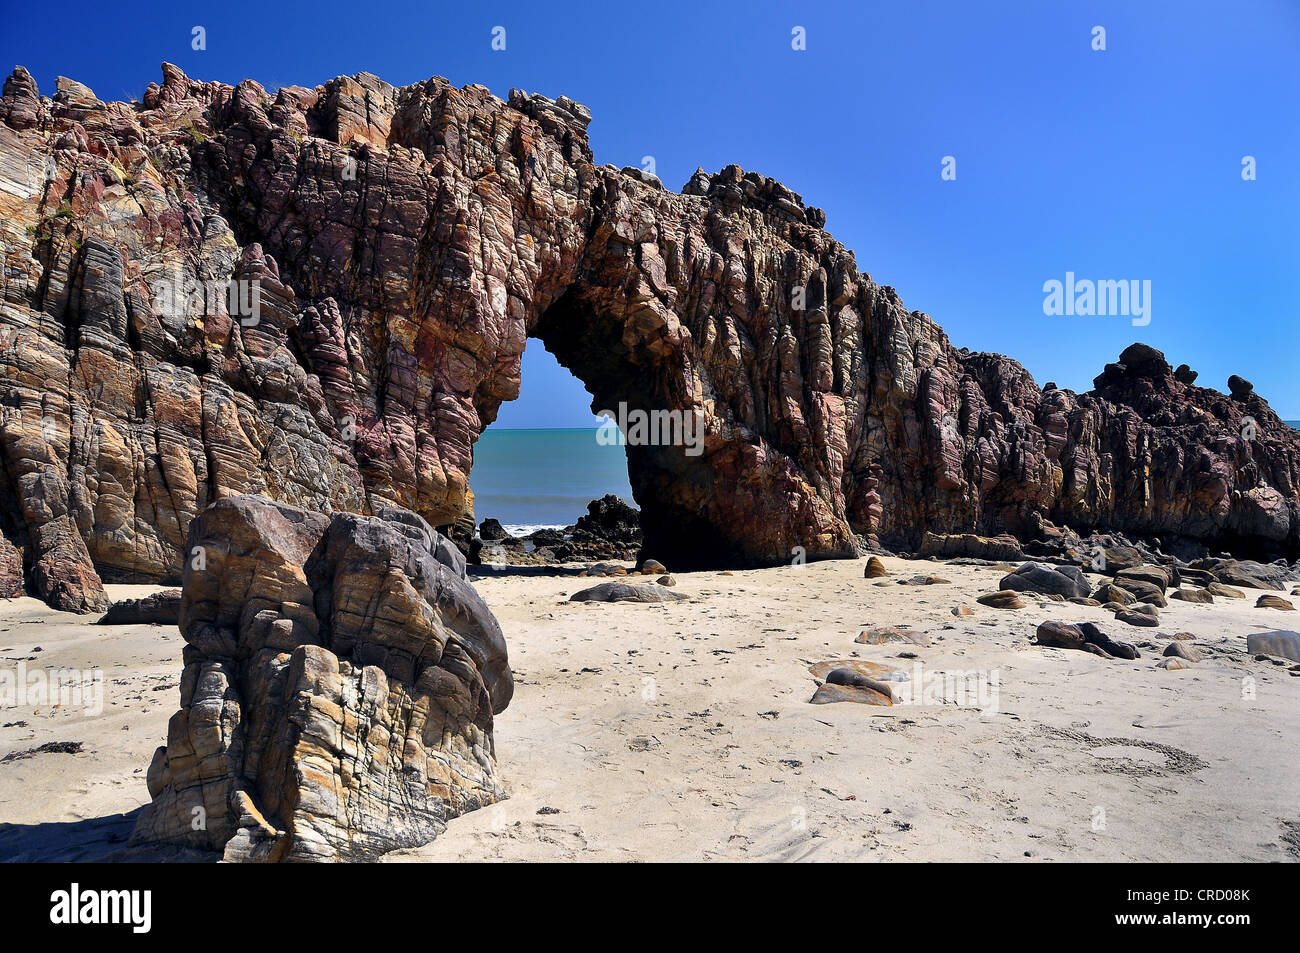 Arco di roccia sulla spiaggia, Jericoacoara vicino a Fortaleza Ceará, Brasile, Sud America Foto Stock